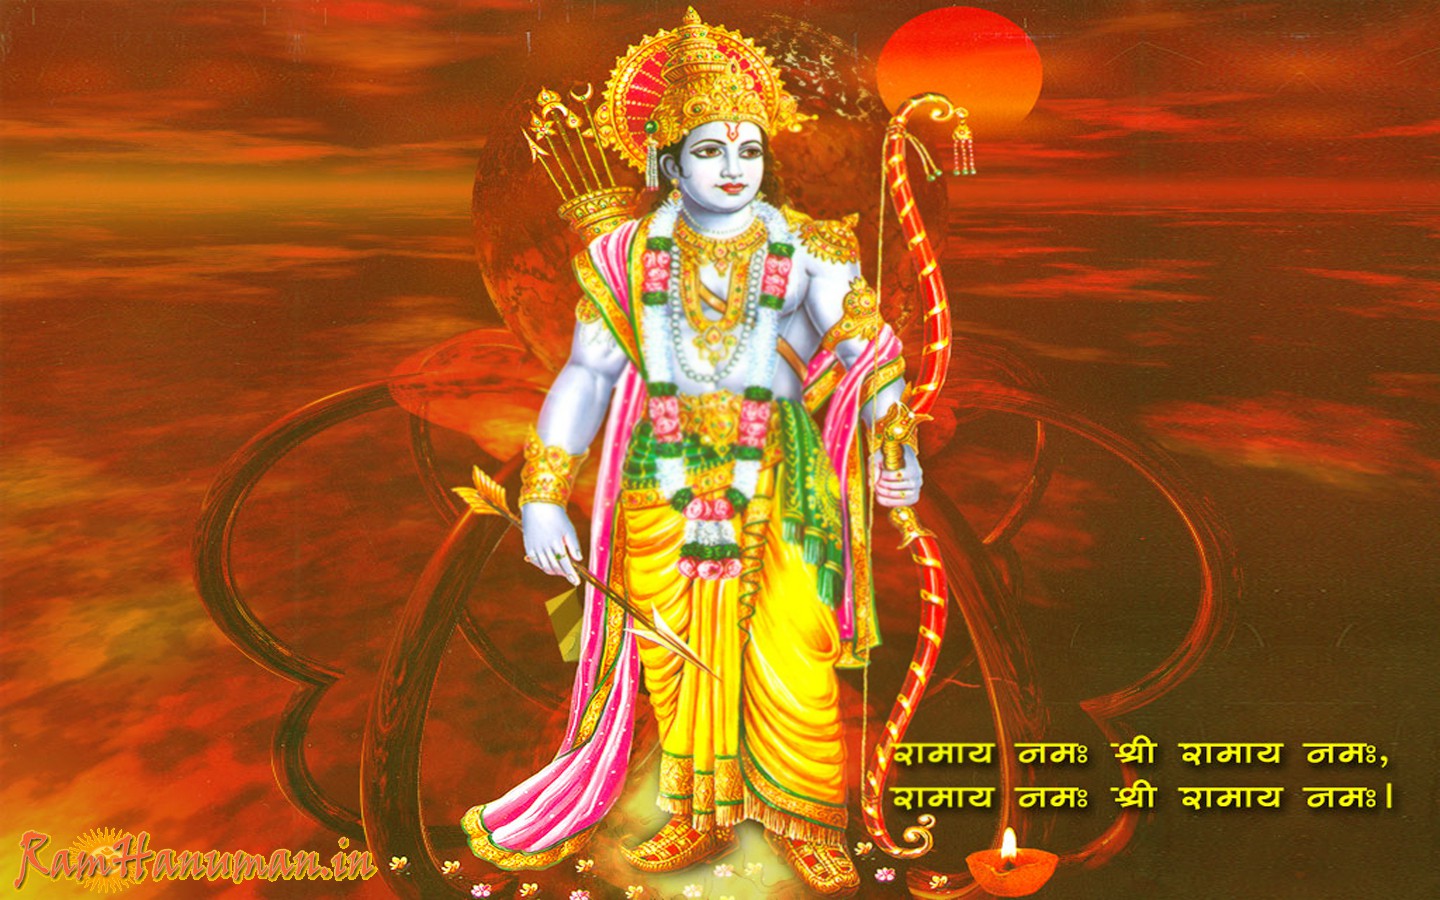 Jai Shree Ram Ram Navmi - 1440x900 Wallpaper 